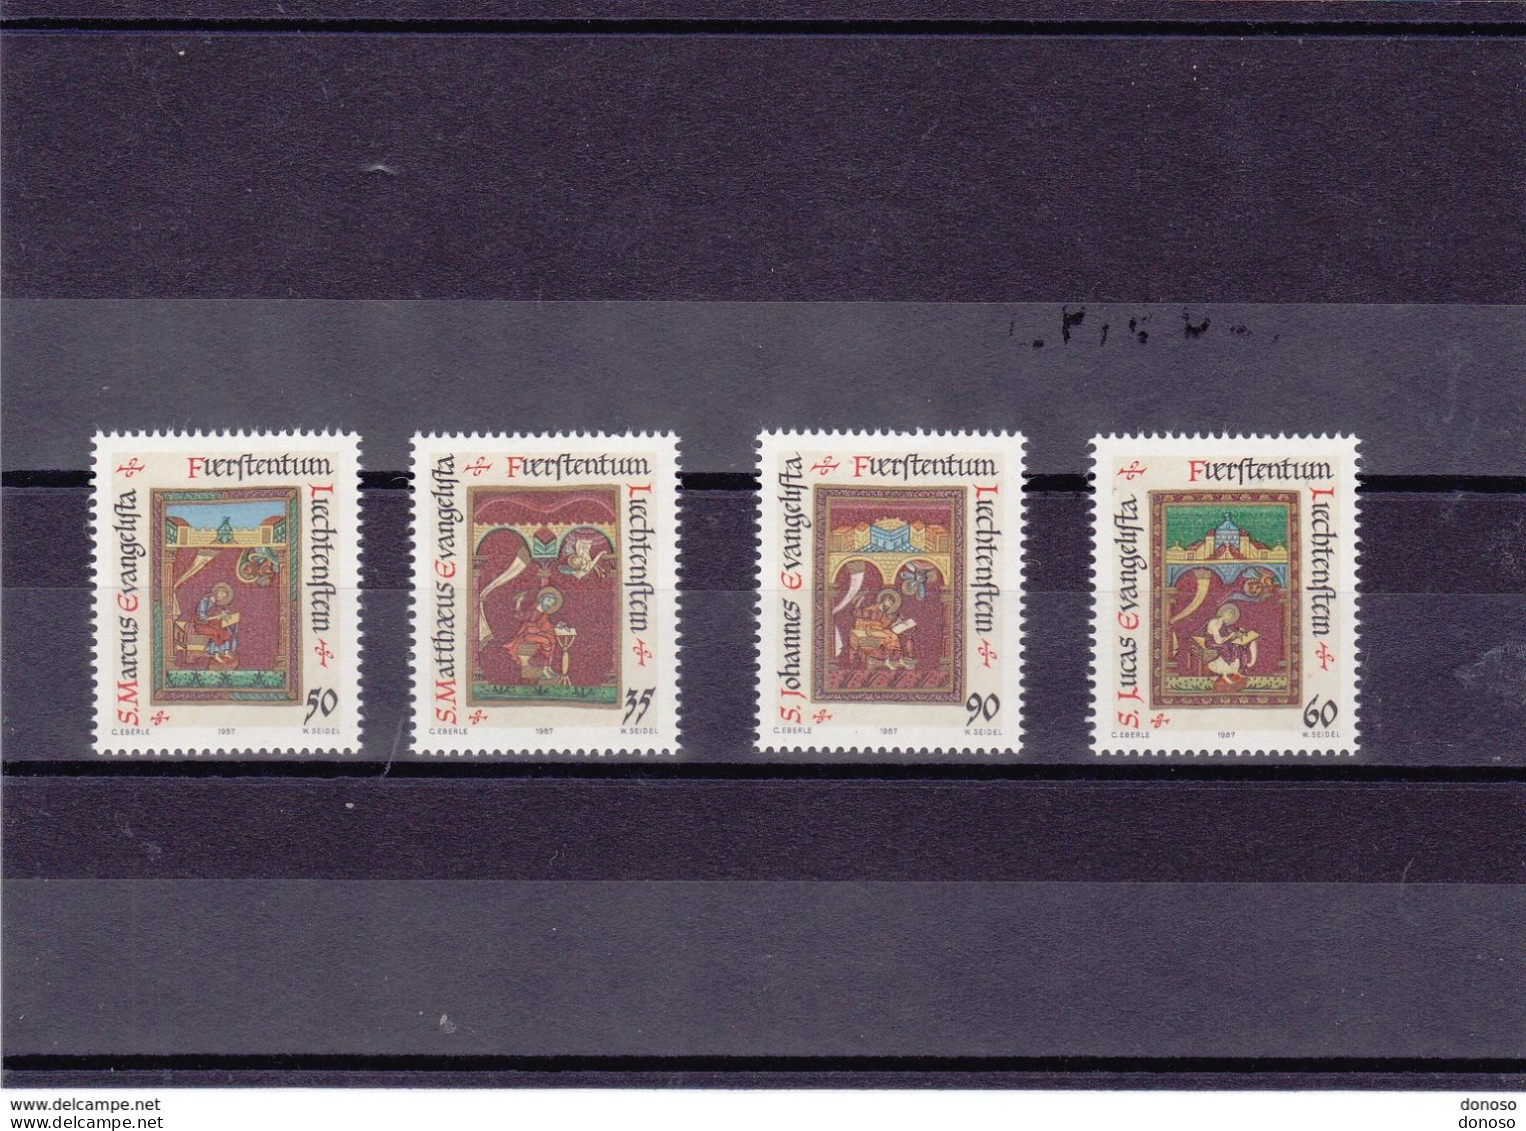 LIECHTENSTEIN 1987 NOËL Yvert 871-874, Michel 930-933 NEUF** MNH Cote 4,75 Euros - Unused Stamps